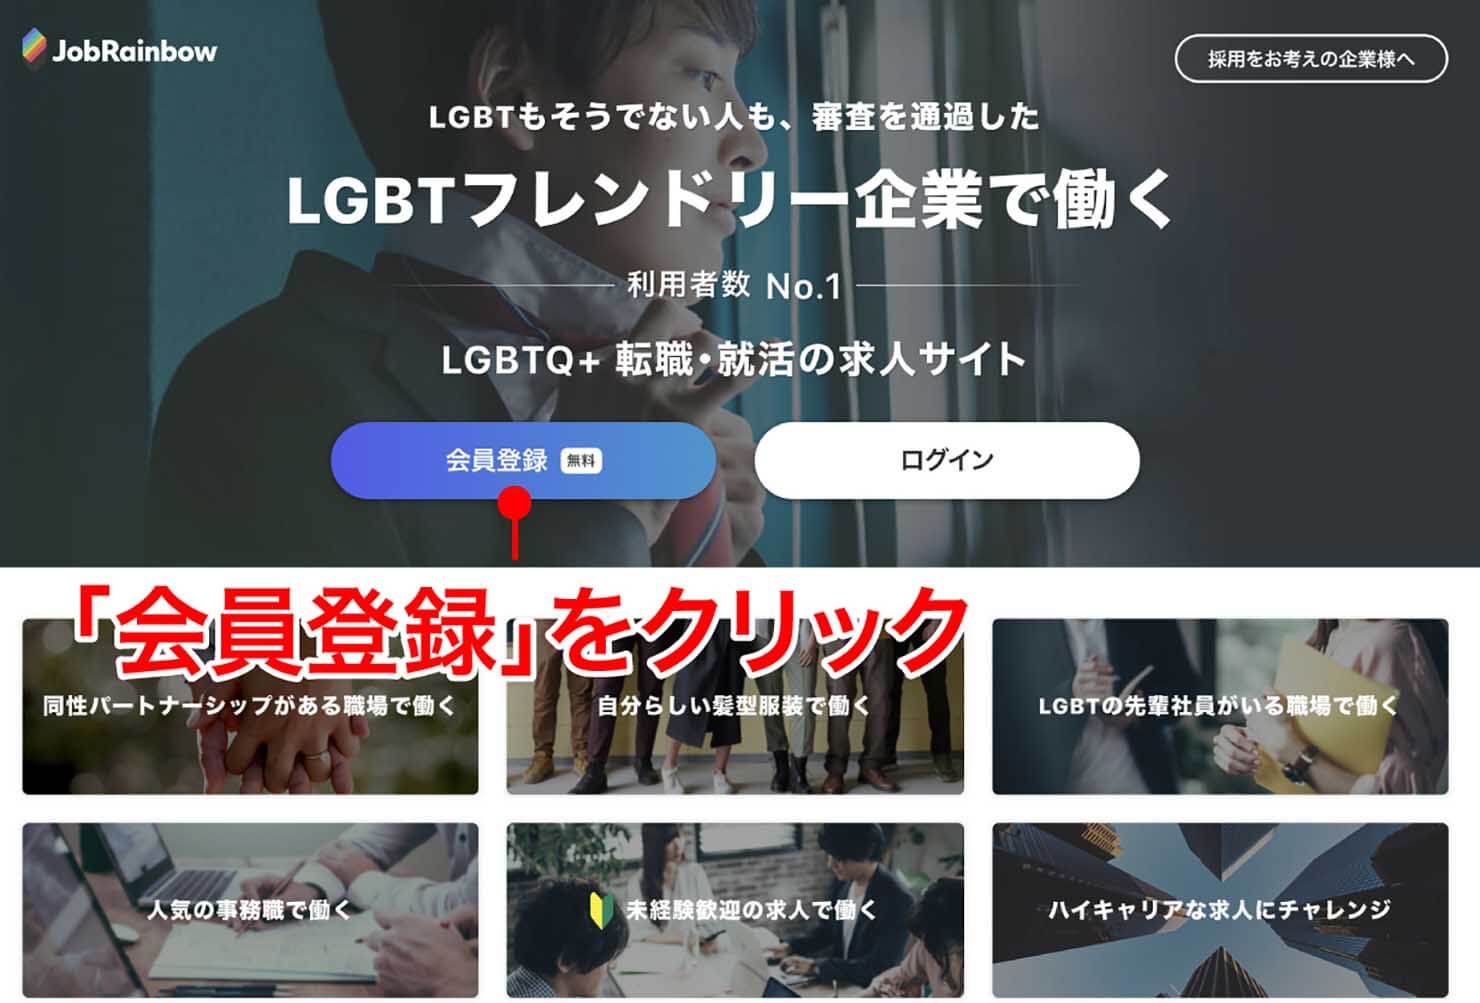 LGBTフレンドリーな就活サイト・JobRainbowのトップページ 